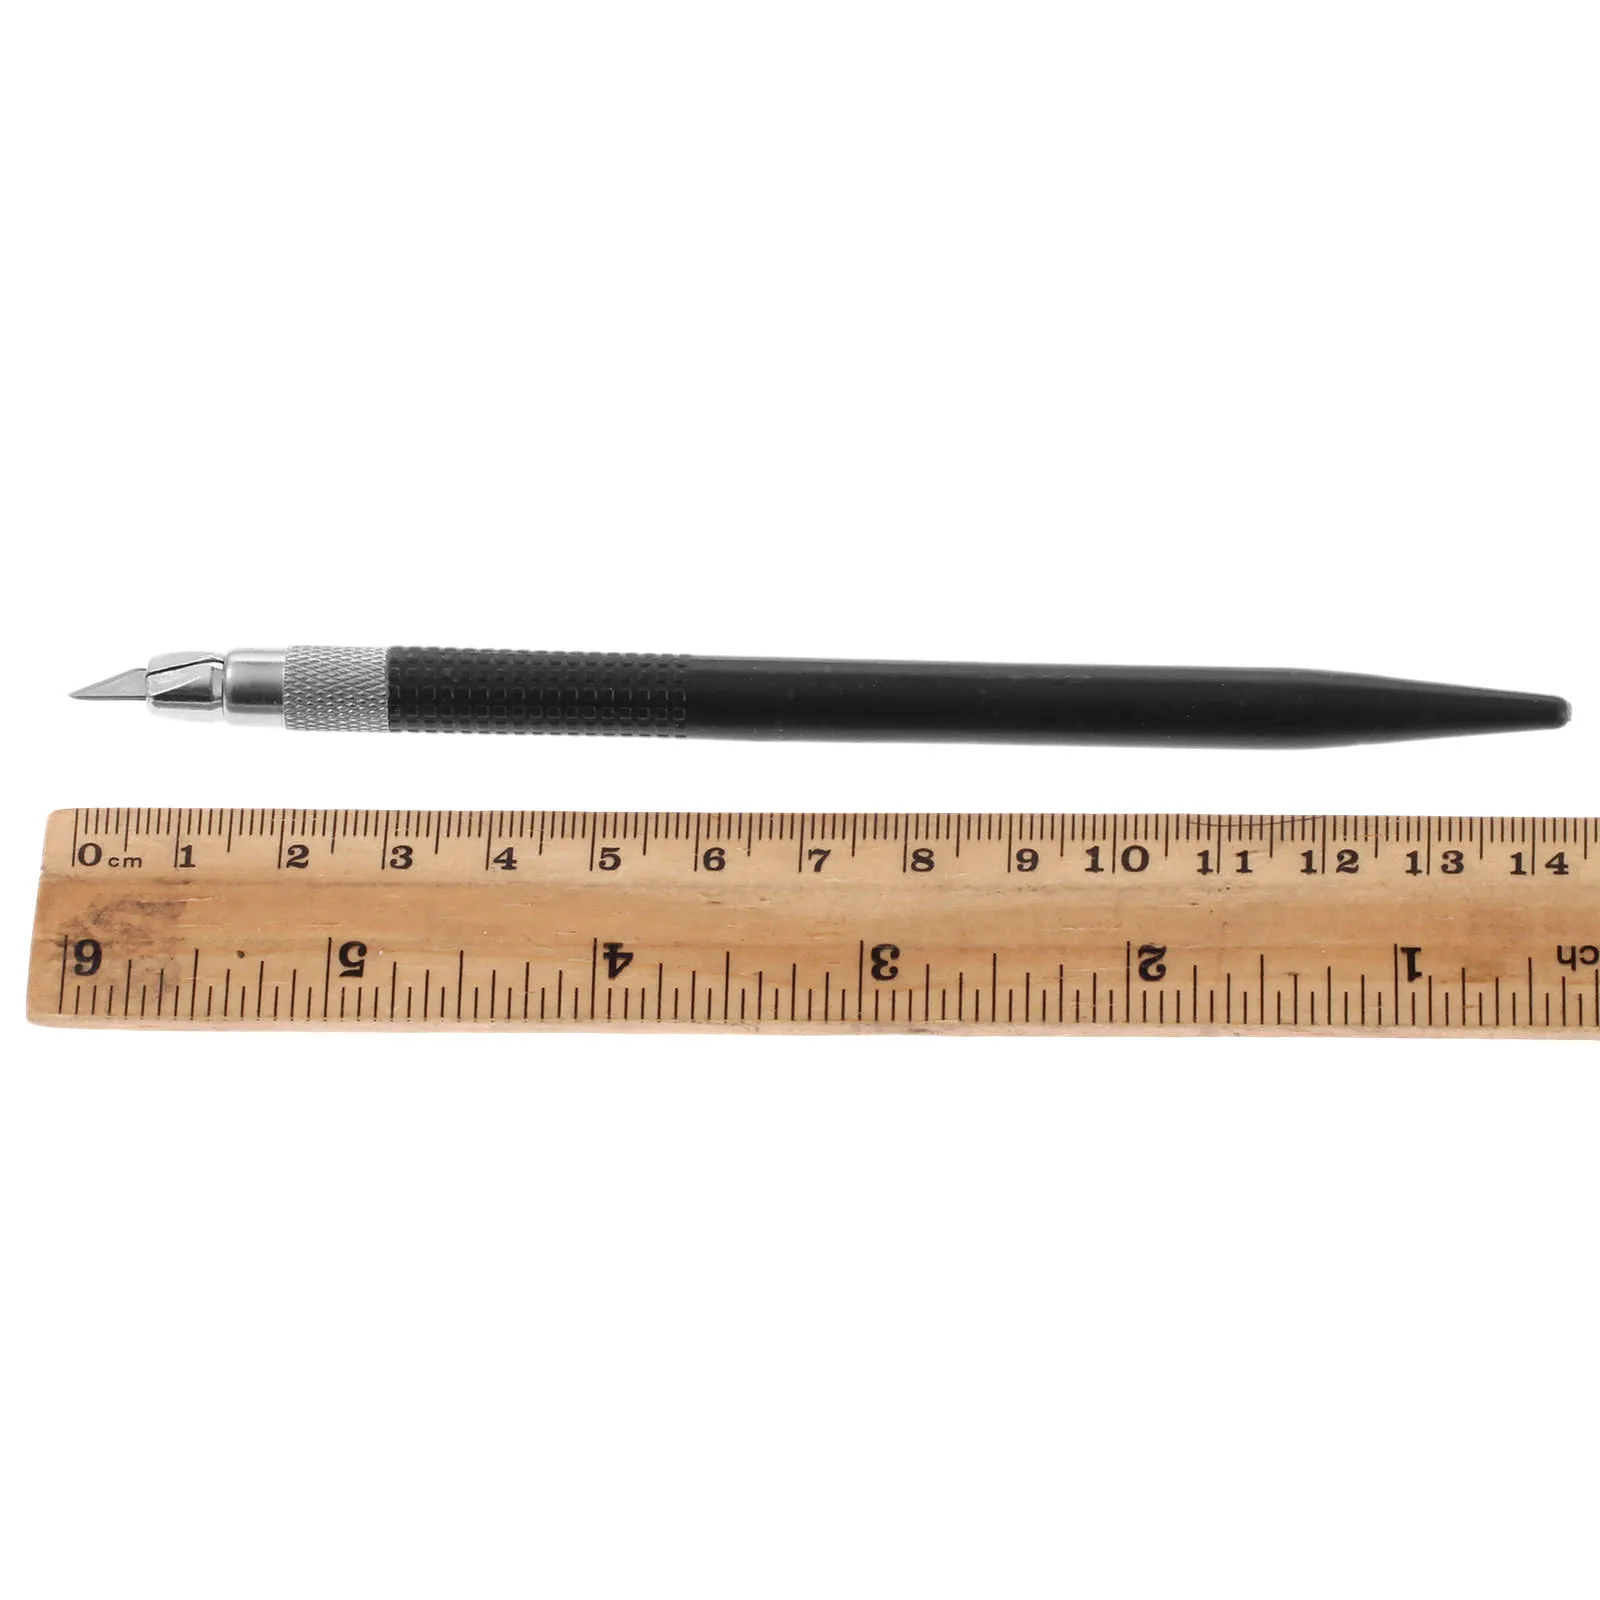 DRELD 12 шт. лезвия хобби нож резак Кожа DIY инструменты ремесла скальпель Graver для ремонта печатных плат Mulit ручка пленка резьба по дереву ручка